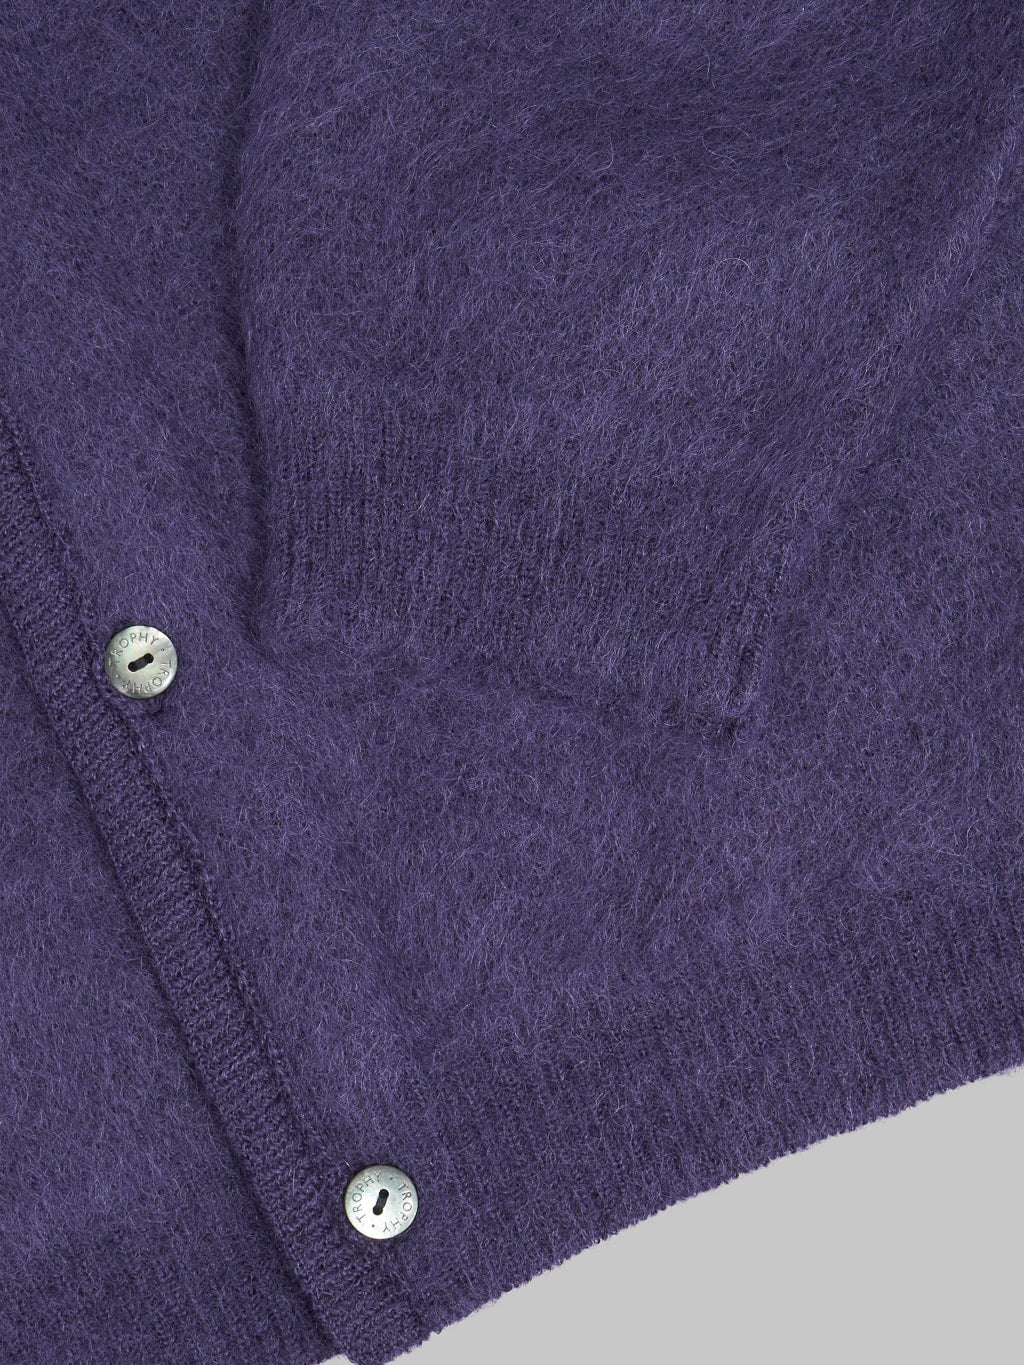 Trophy Clothing Mohair Knit Cardigan Dark Purple cuff